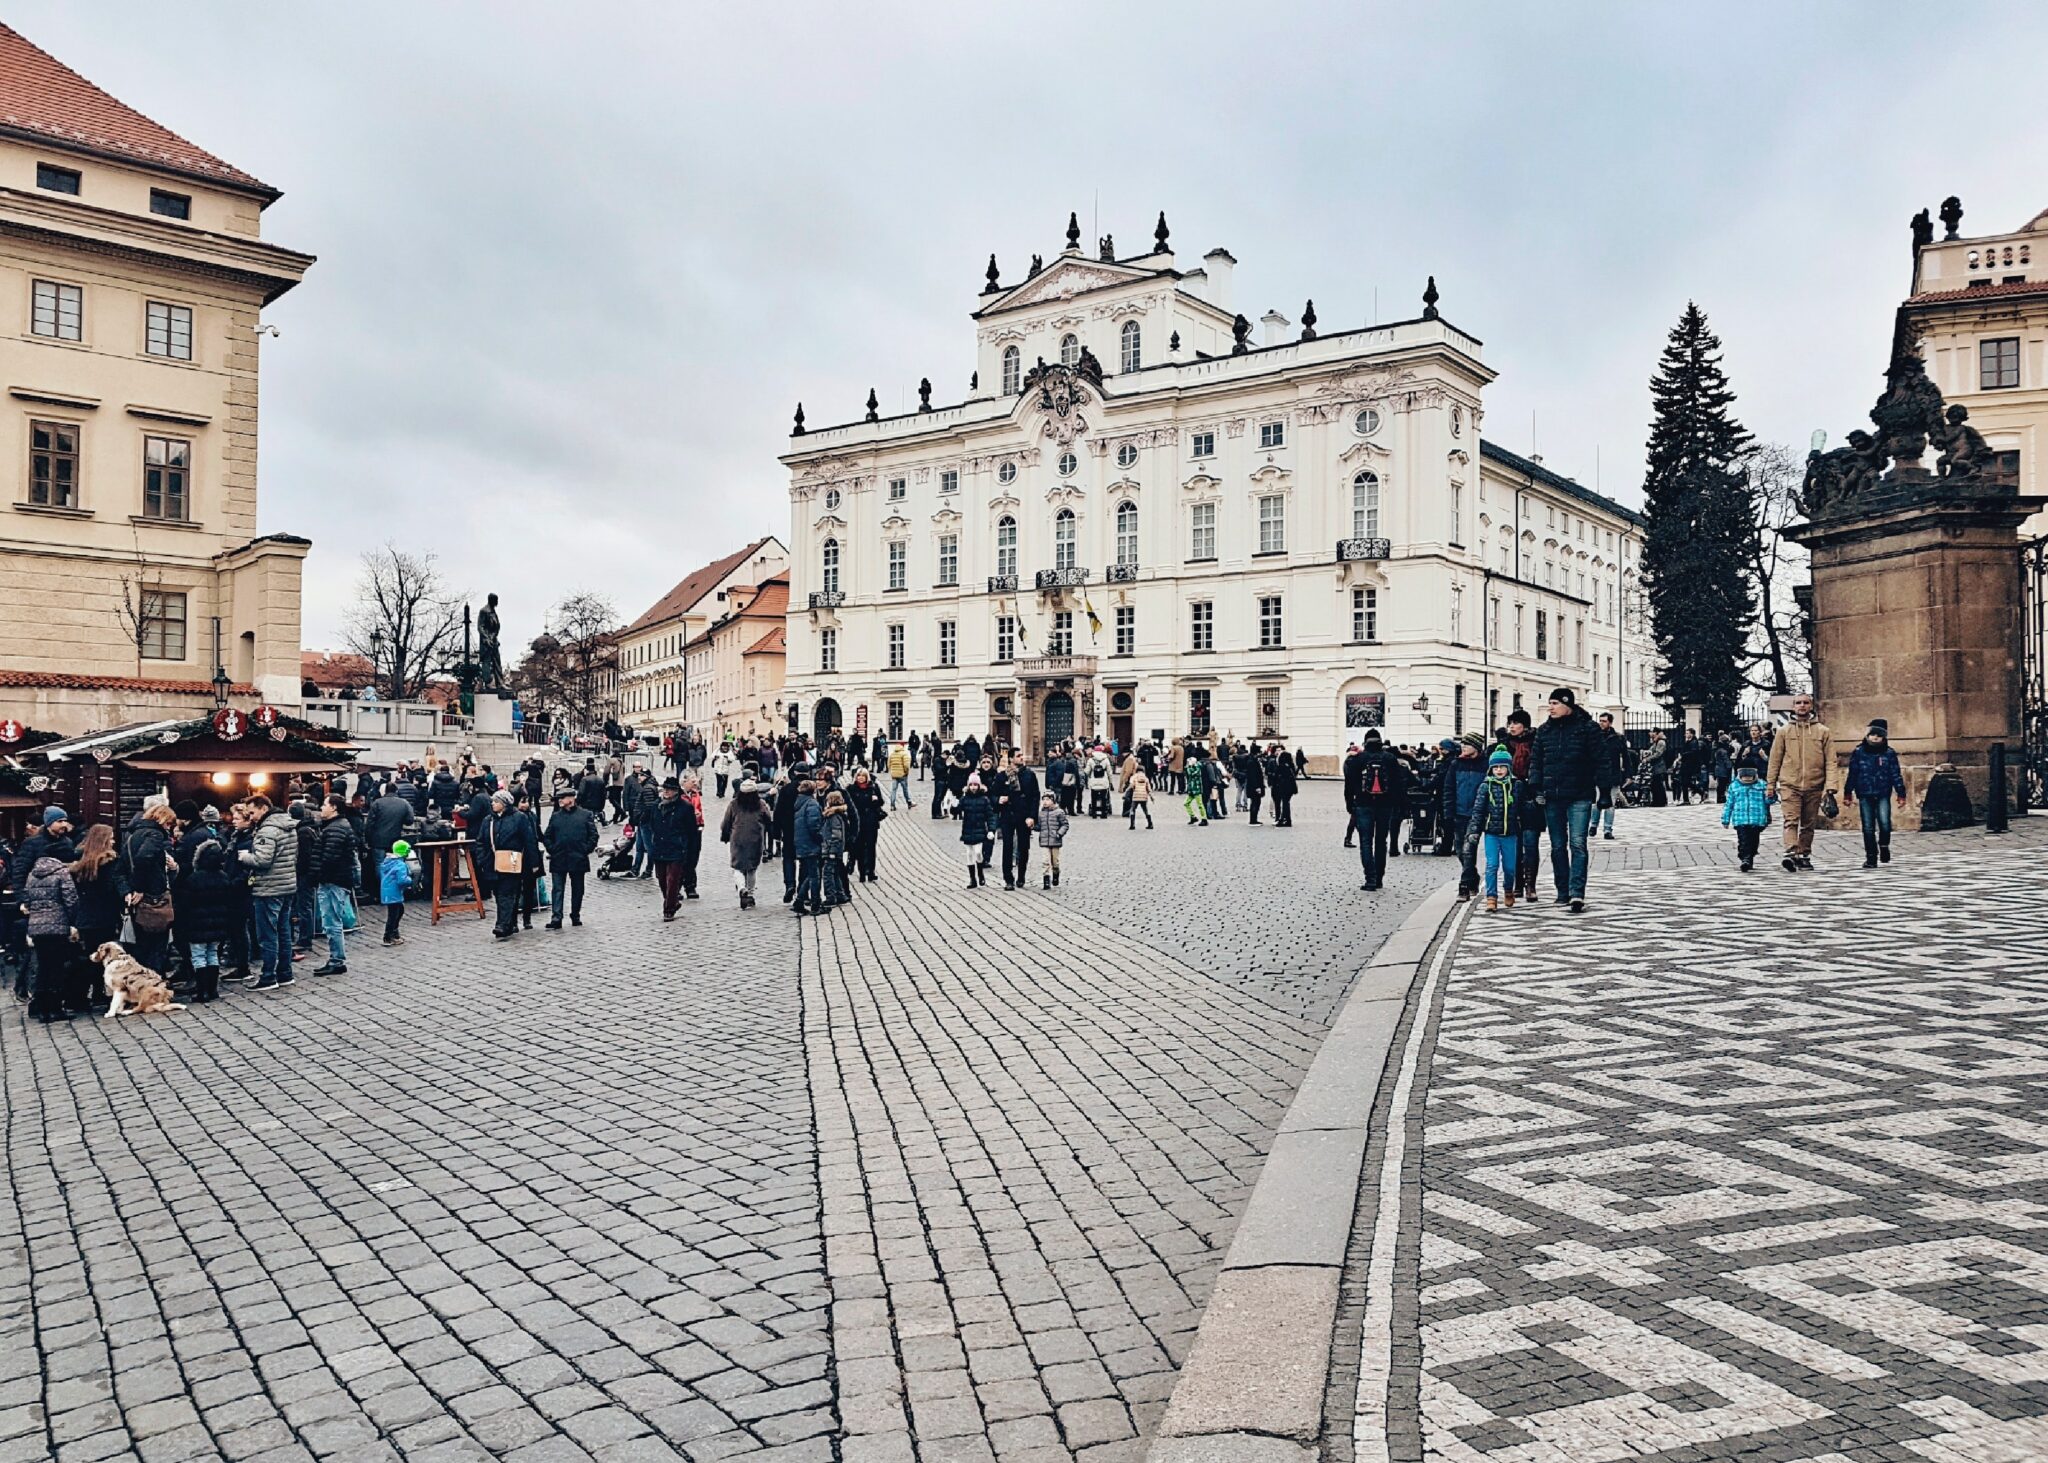 caso histórico de Praga